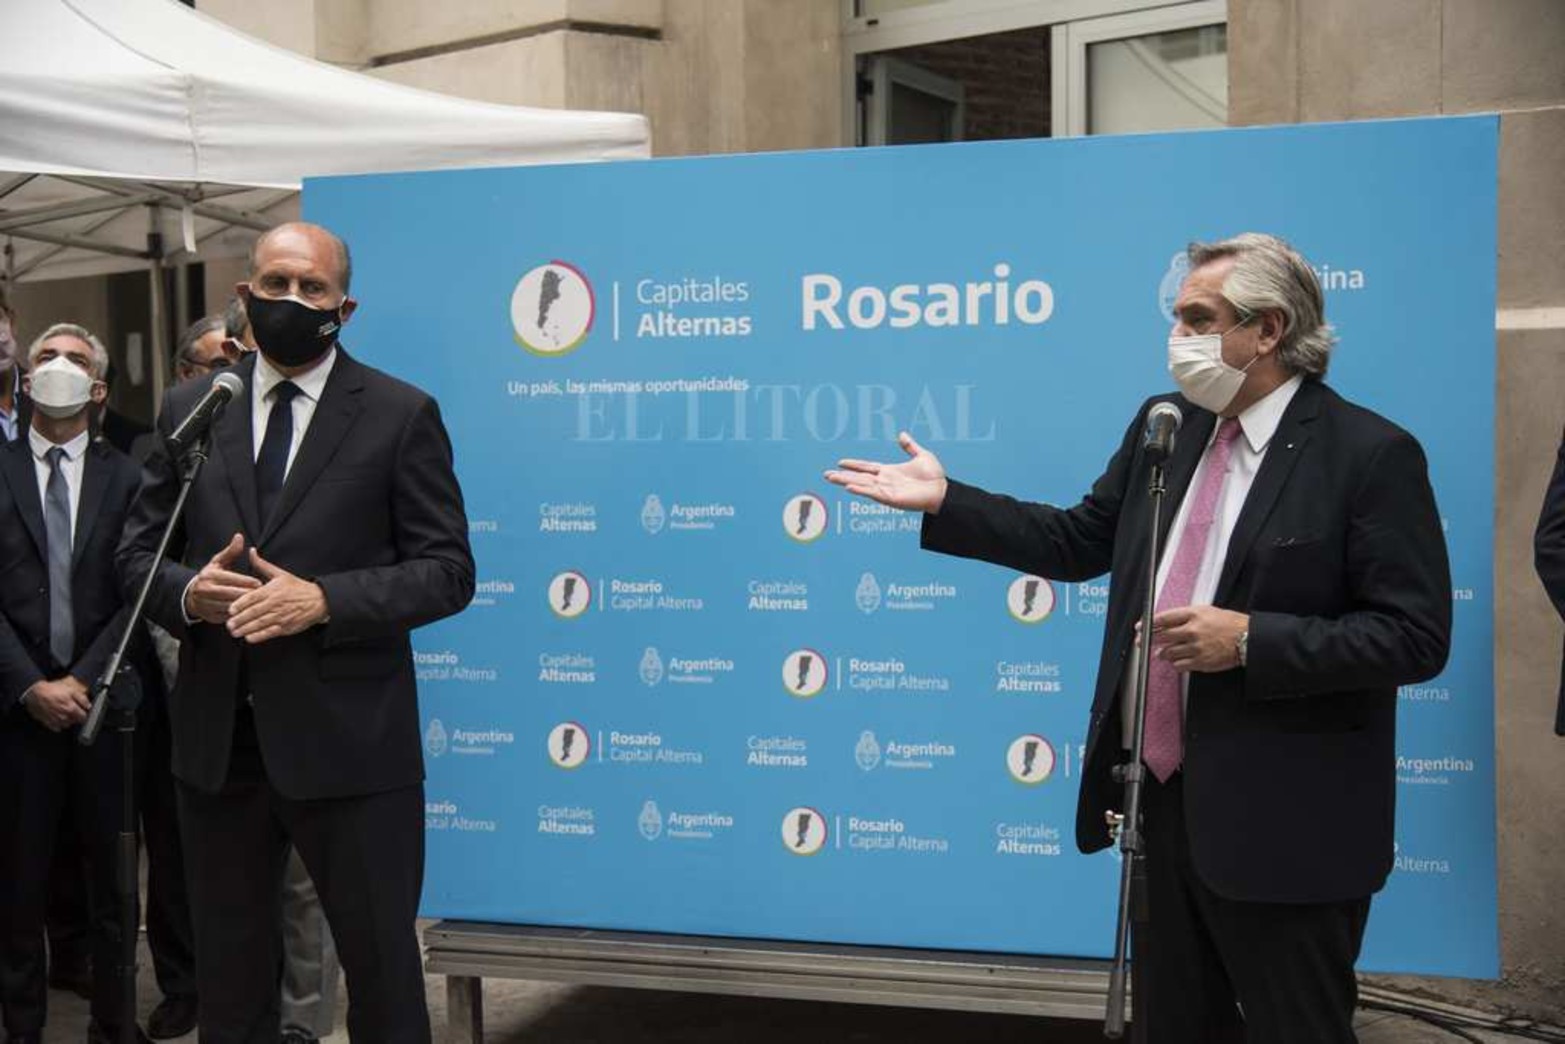 El Presidente Alberto Fernandez visitó en el día de hoy, la ciudad de Rosario, anunciando nuevas inversiones.